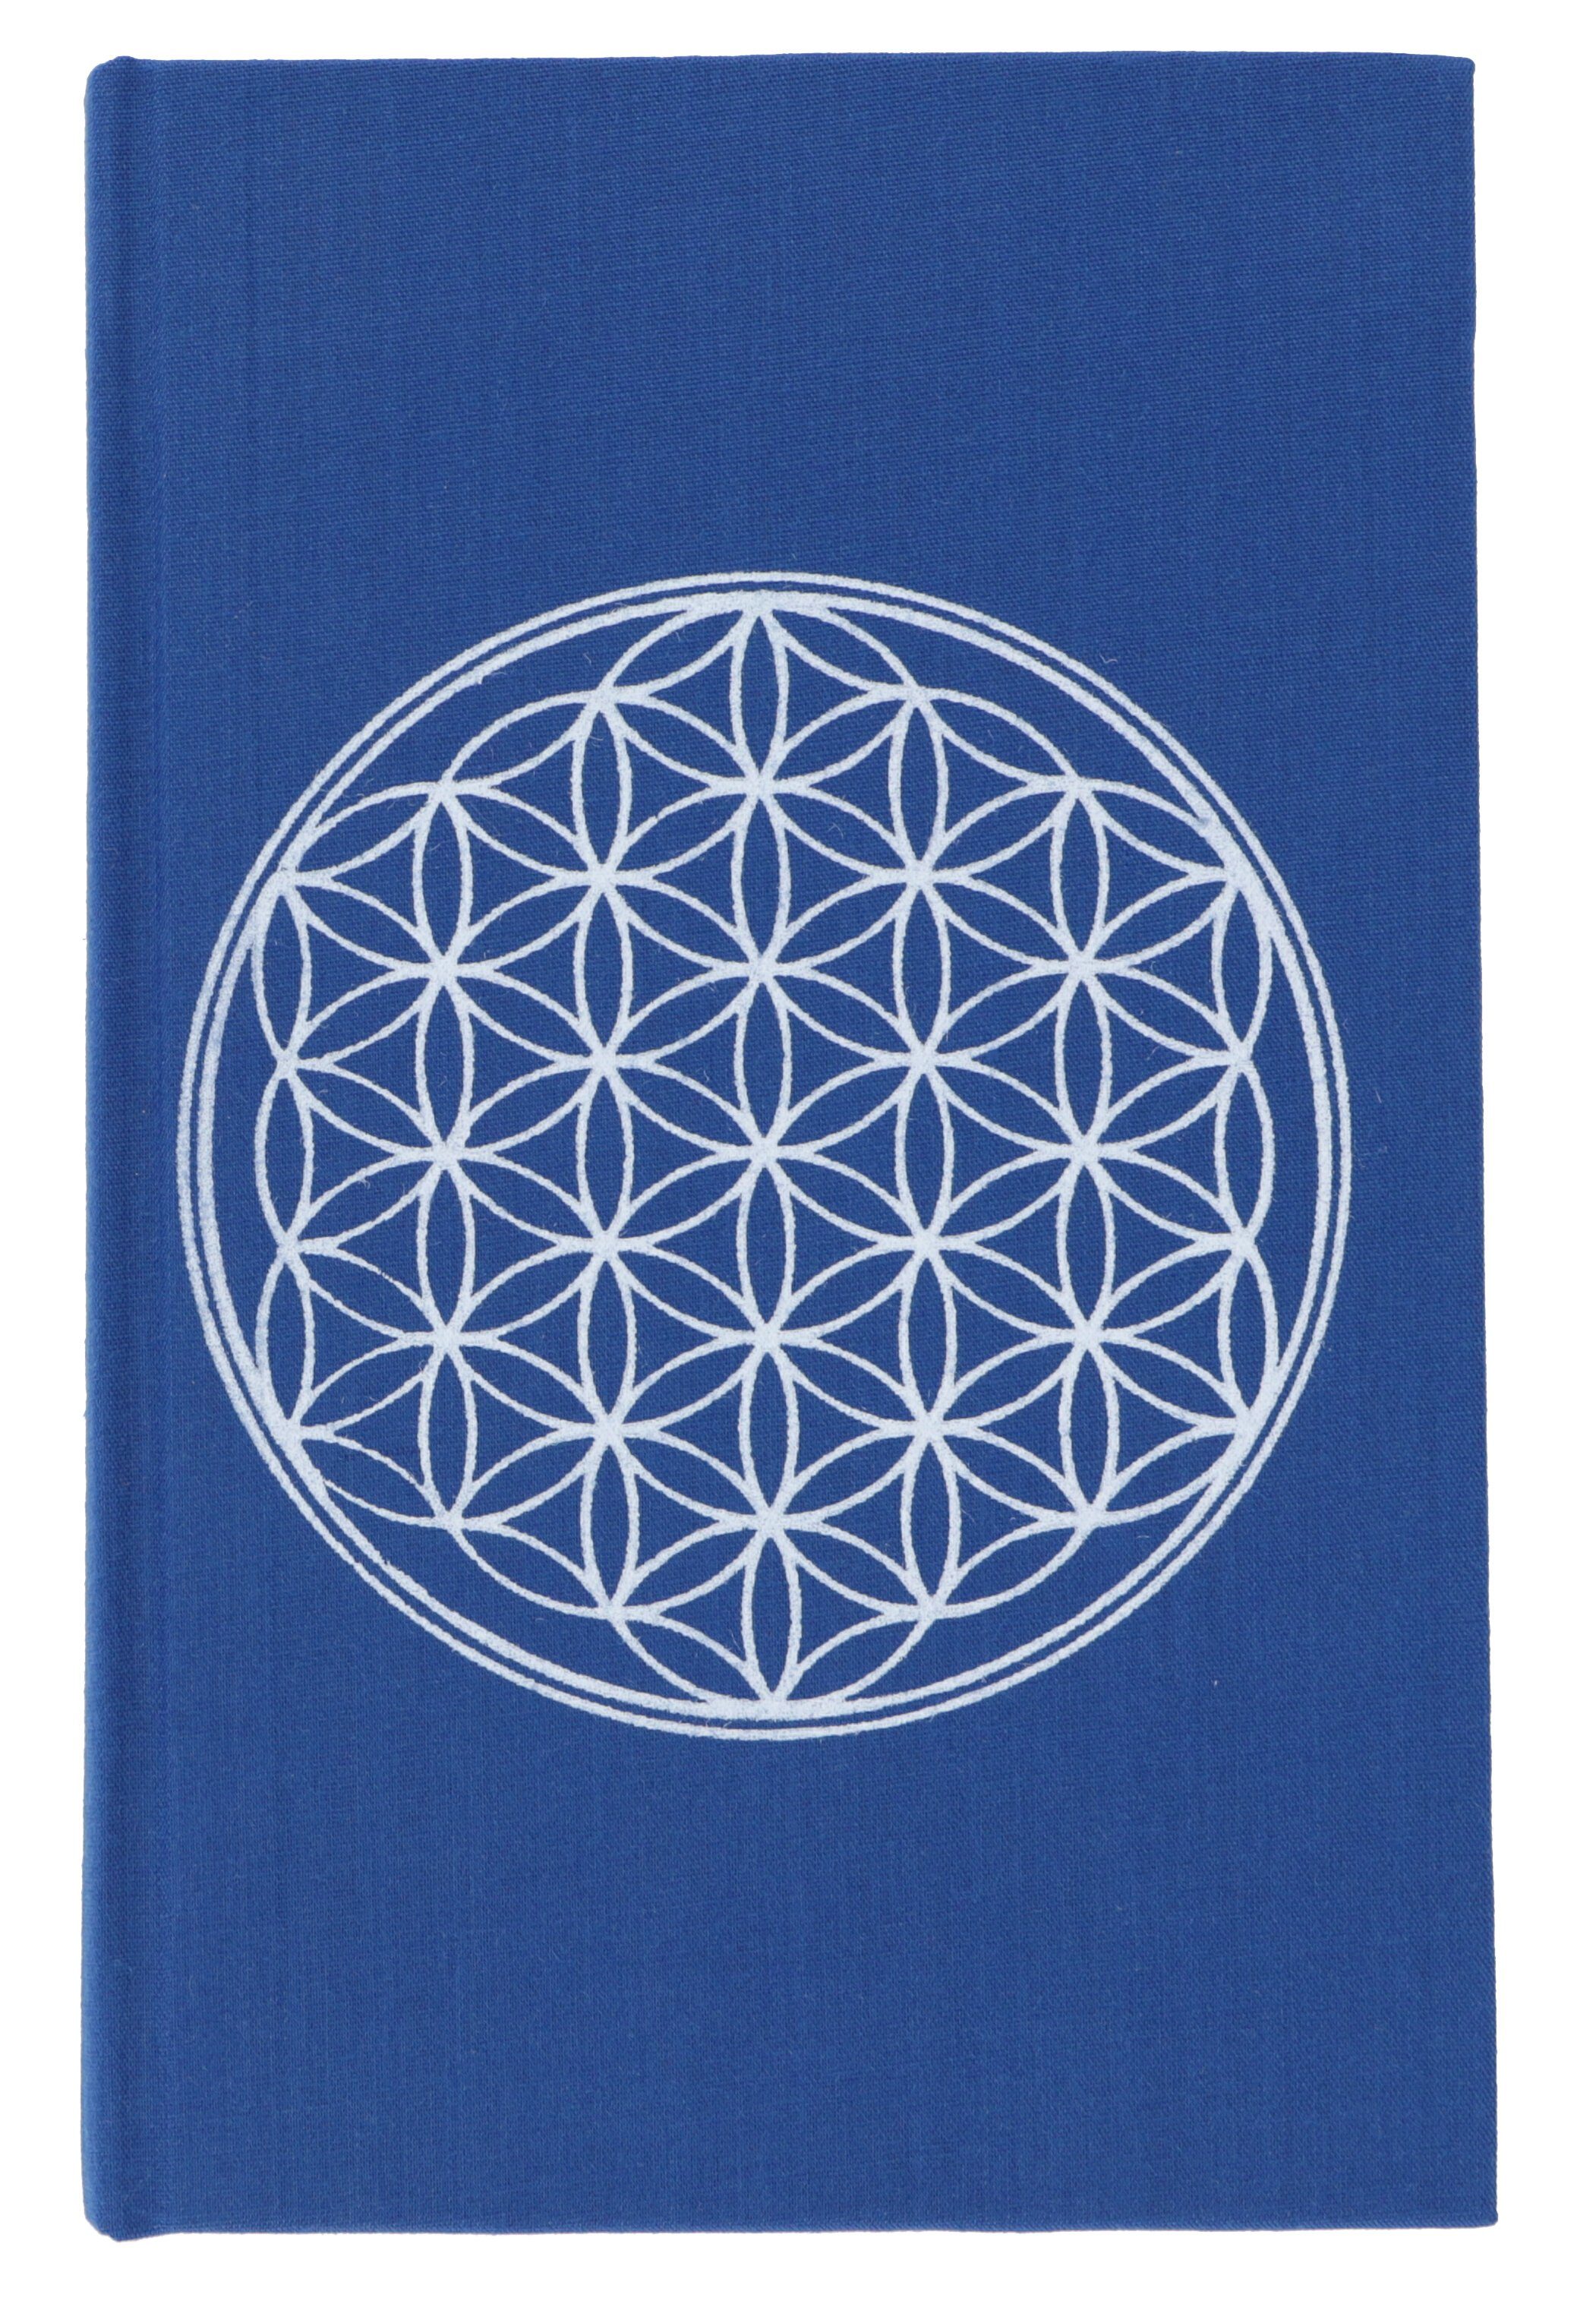 Guru-Shop Tagebuch Notizbuch, Tagebuch - Blume des Lebens blau